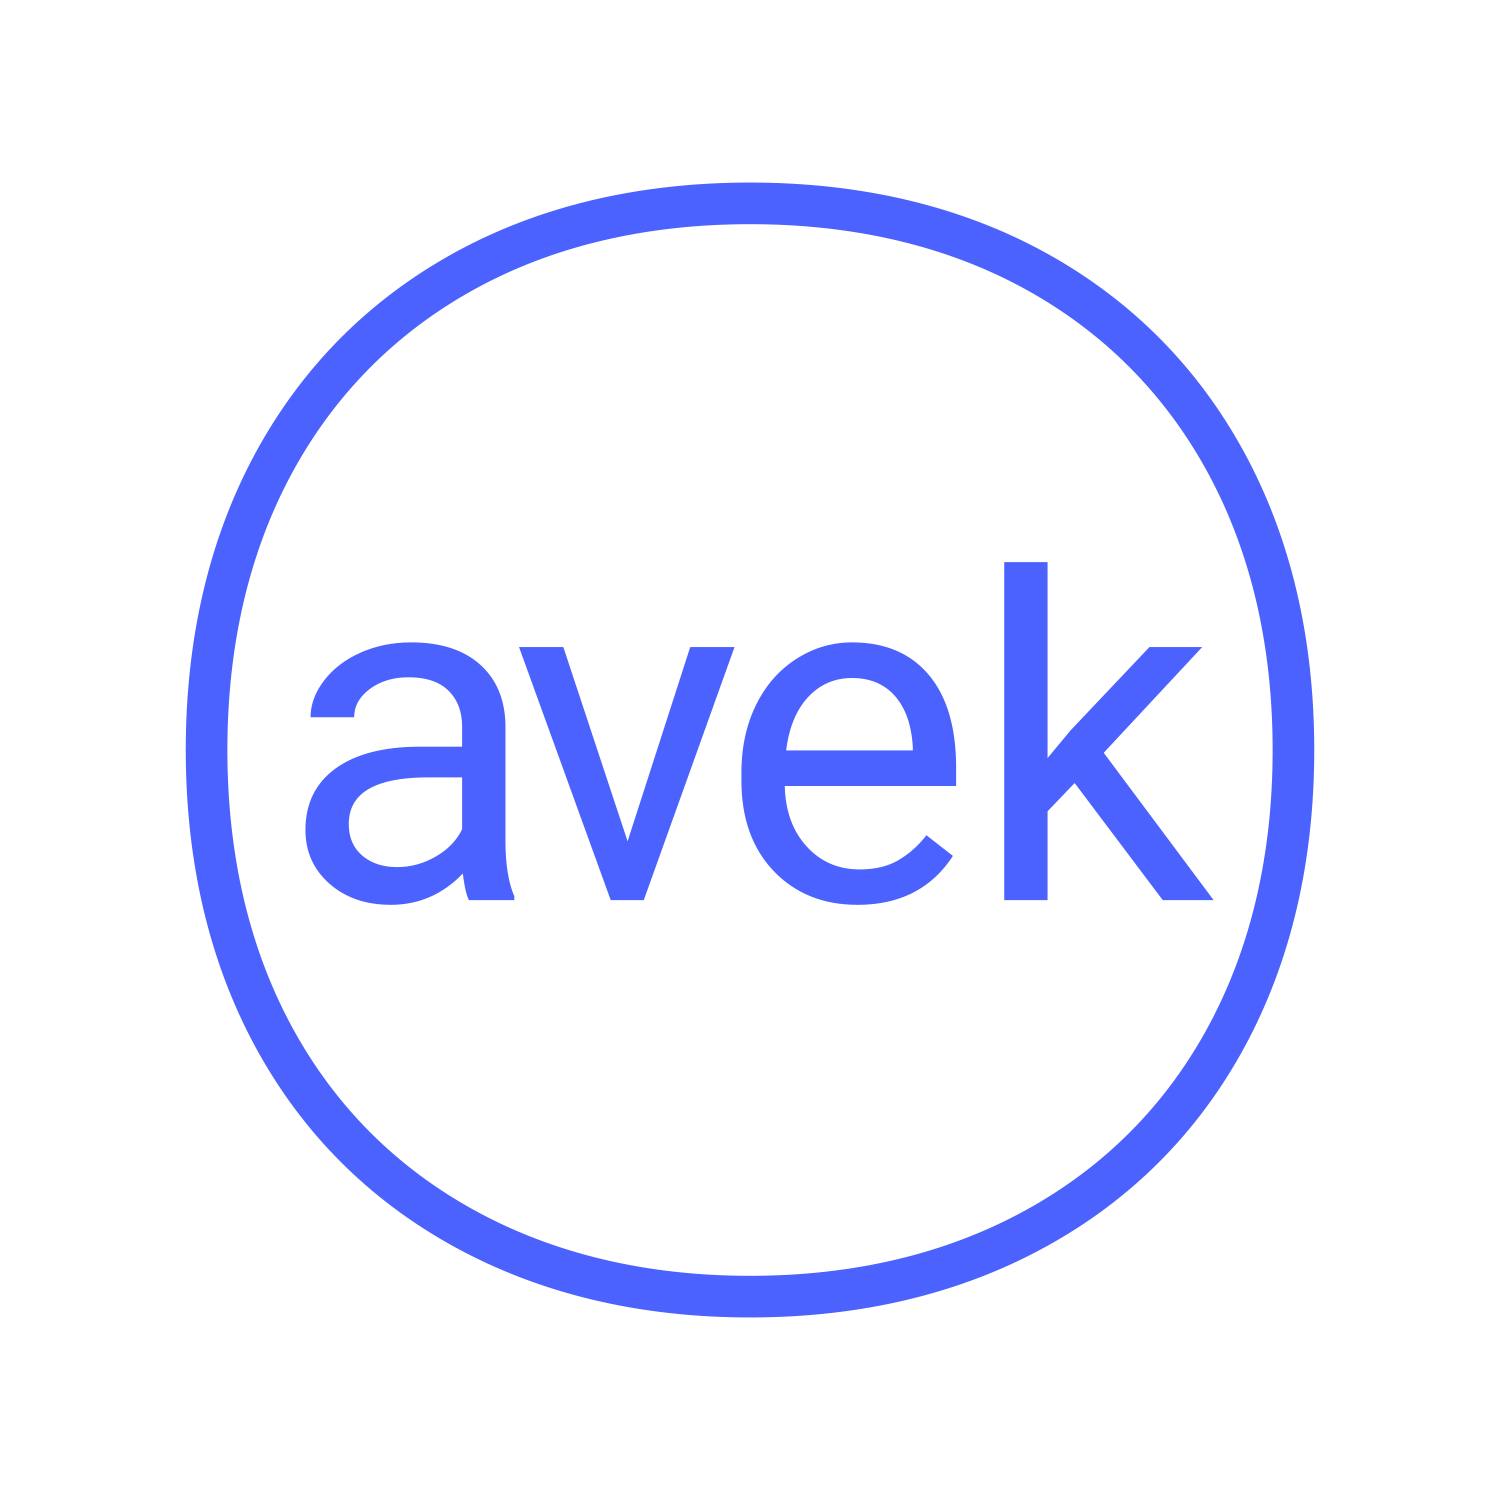 AVEK's logo